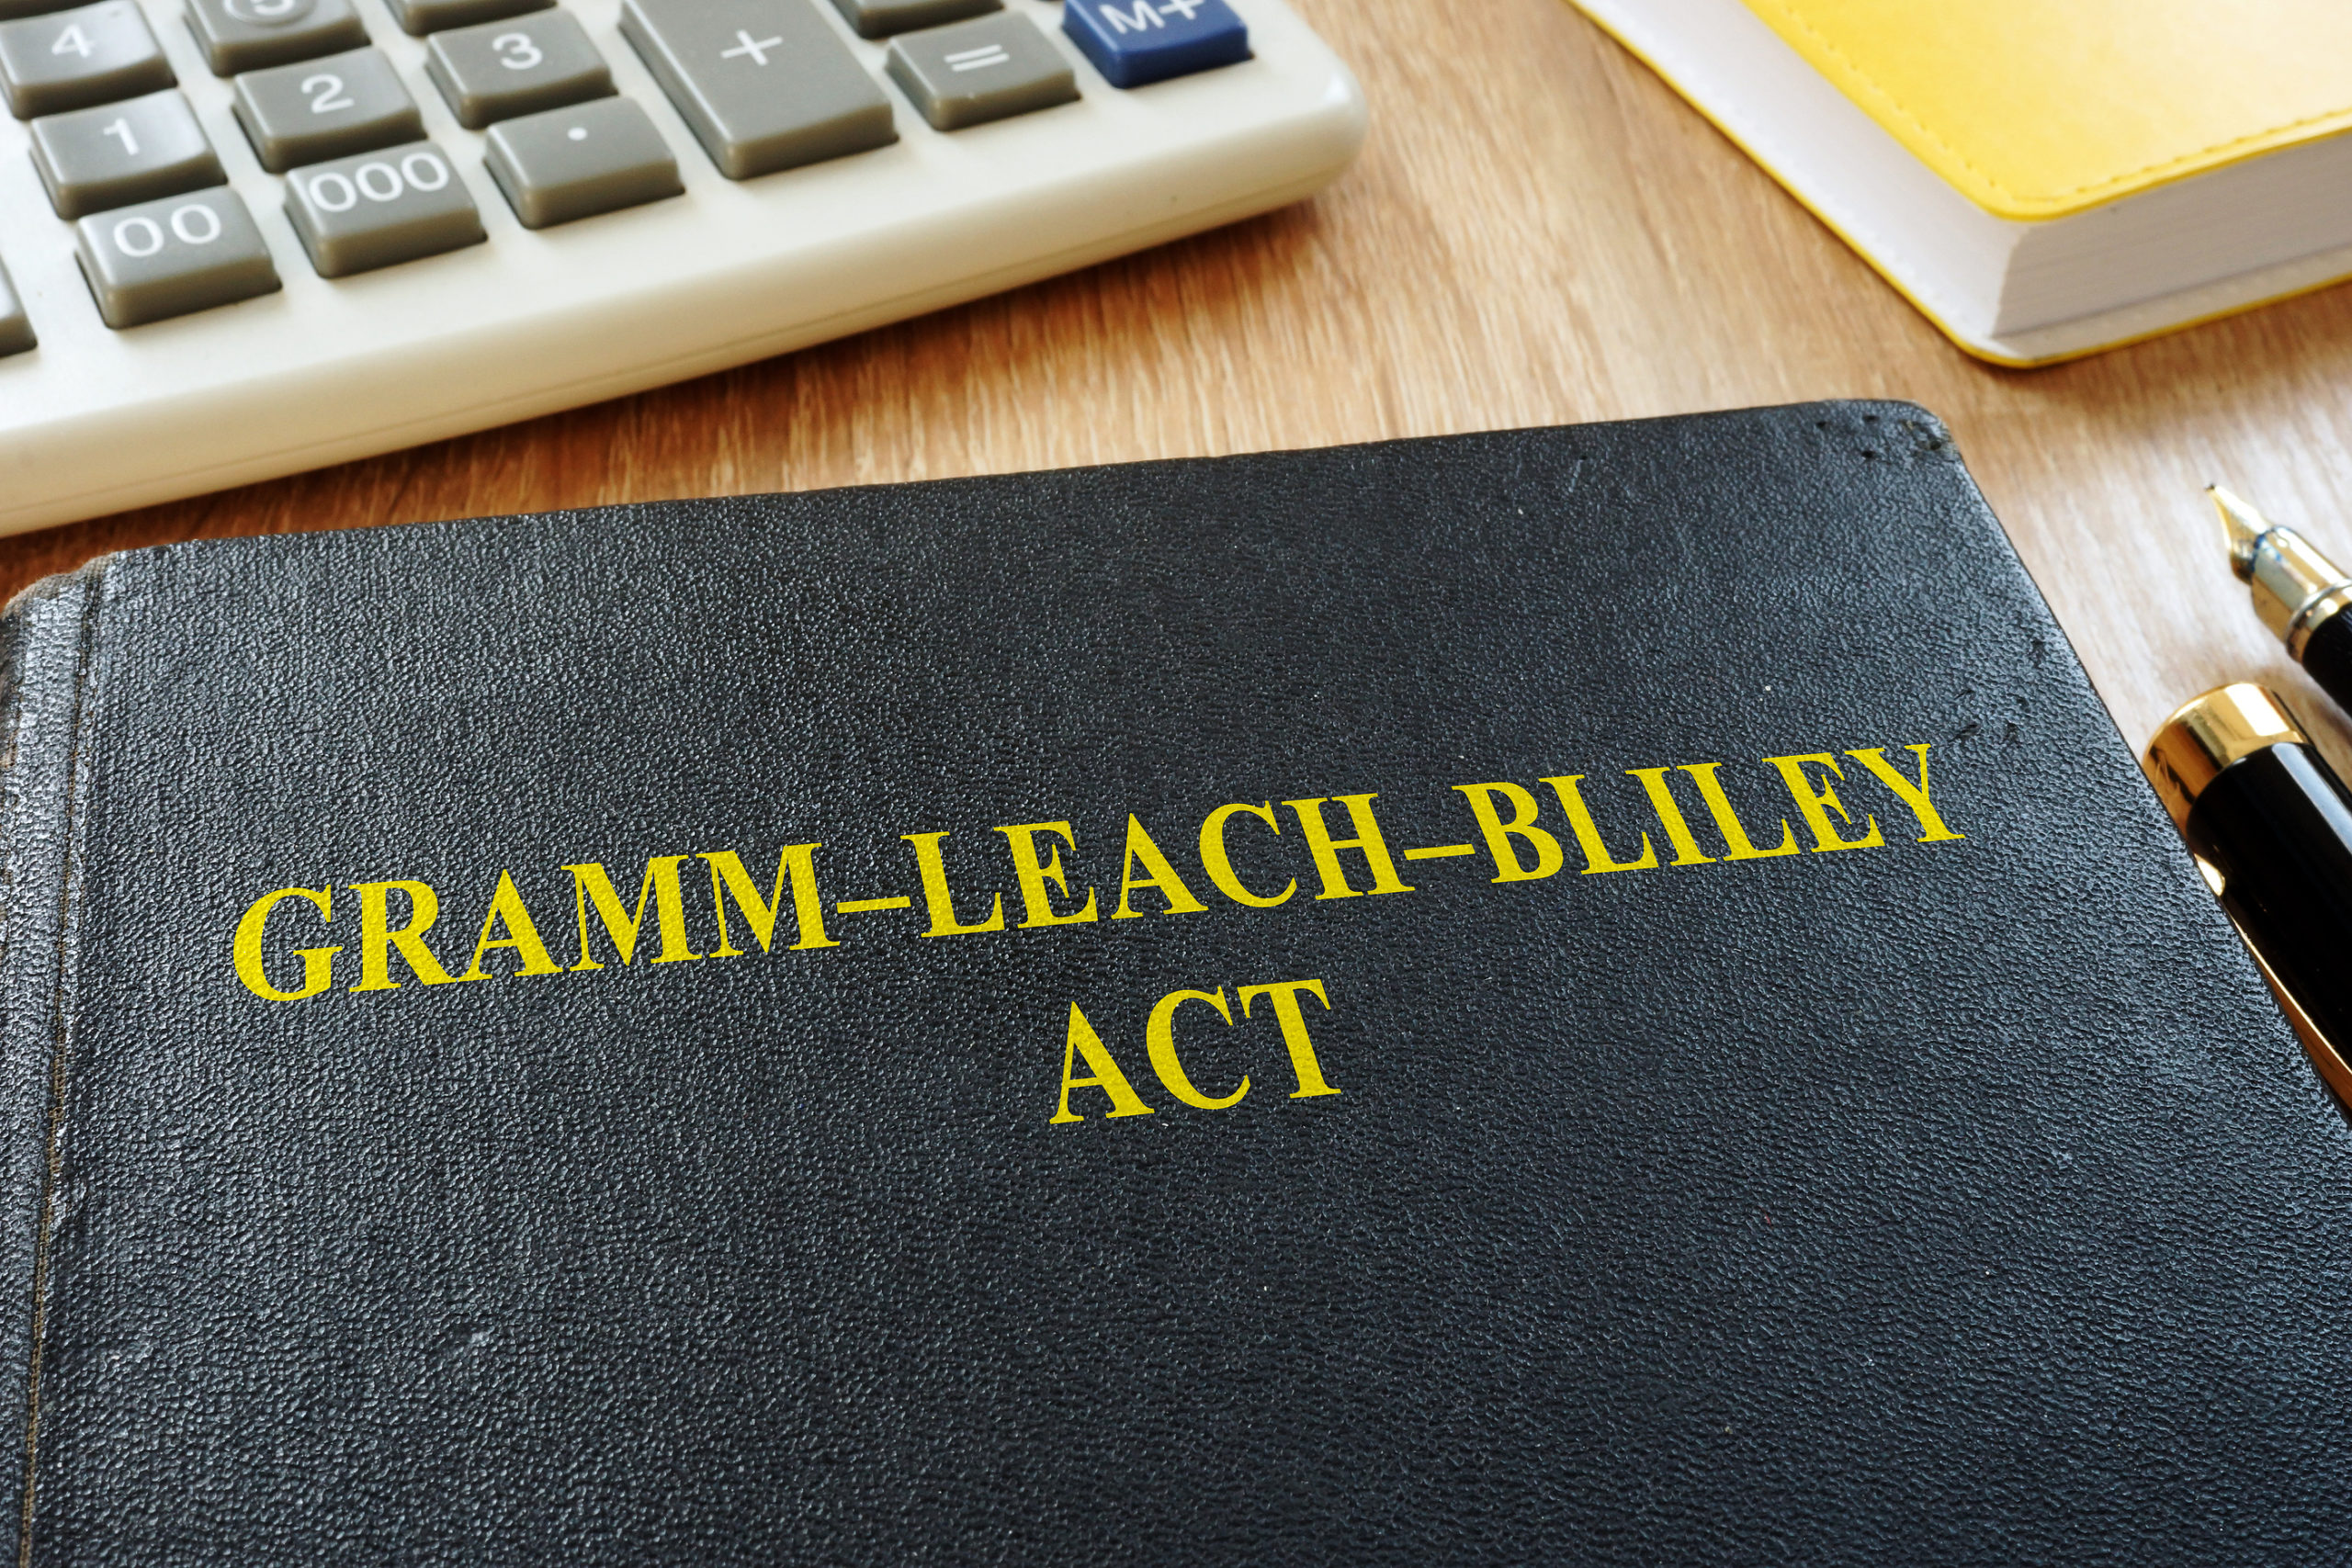 The Gramm-Leach-Bliley Act (GLBA)